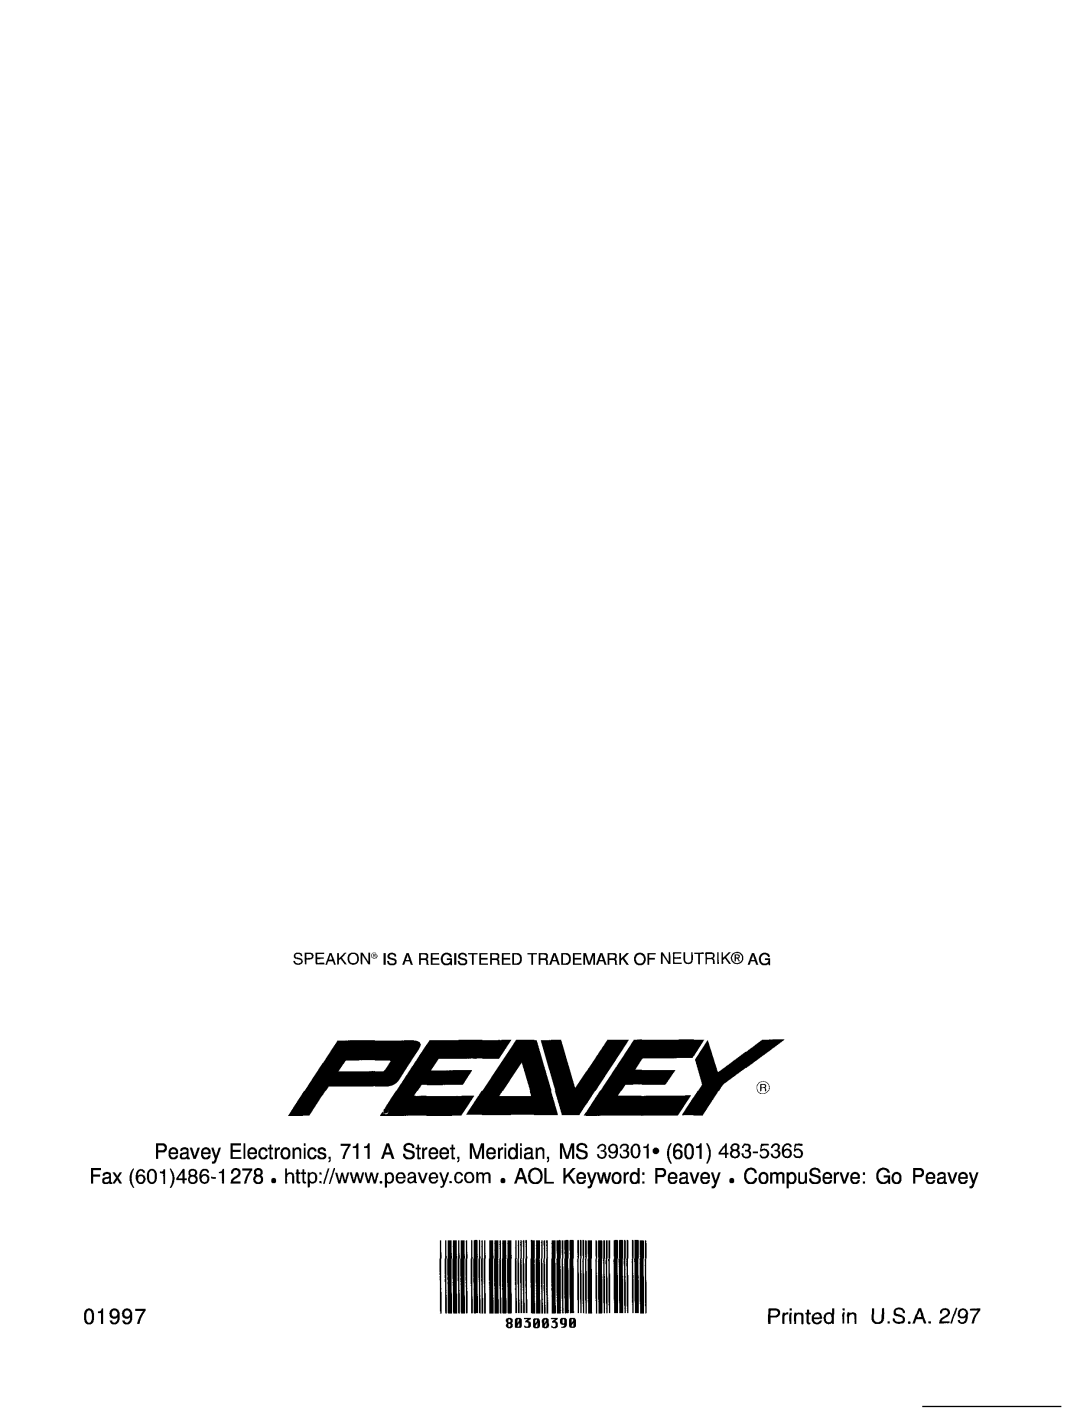 Peavey CS 8OOX manual 01997 